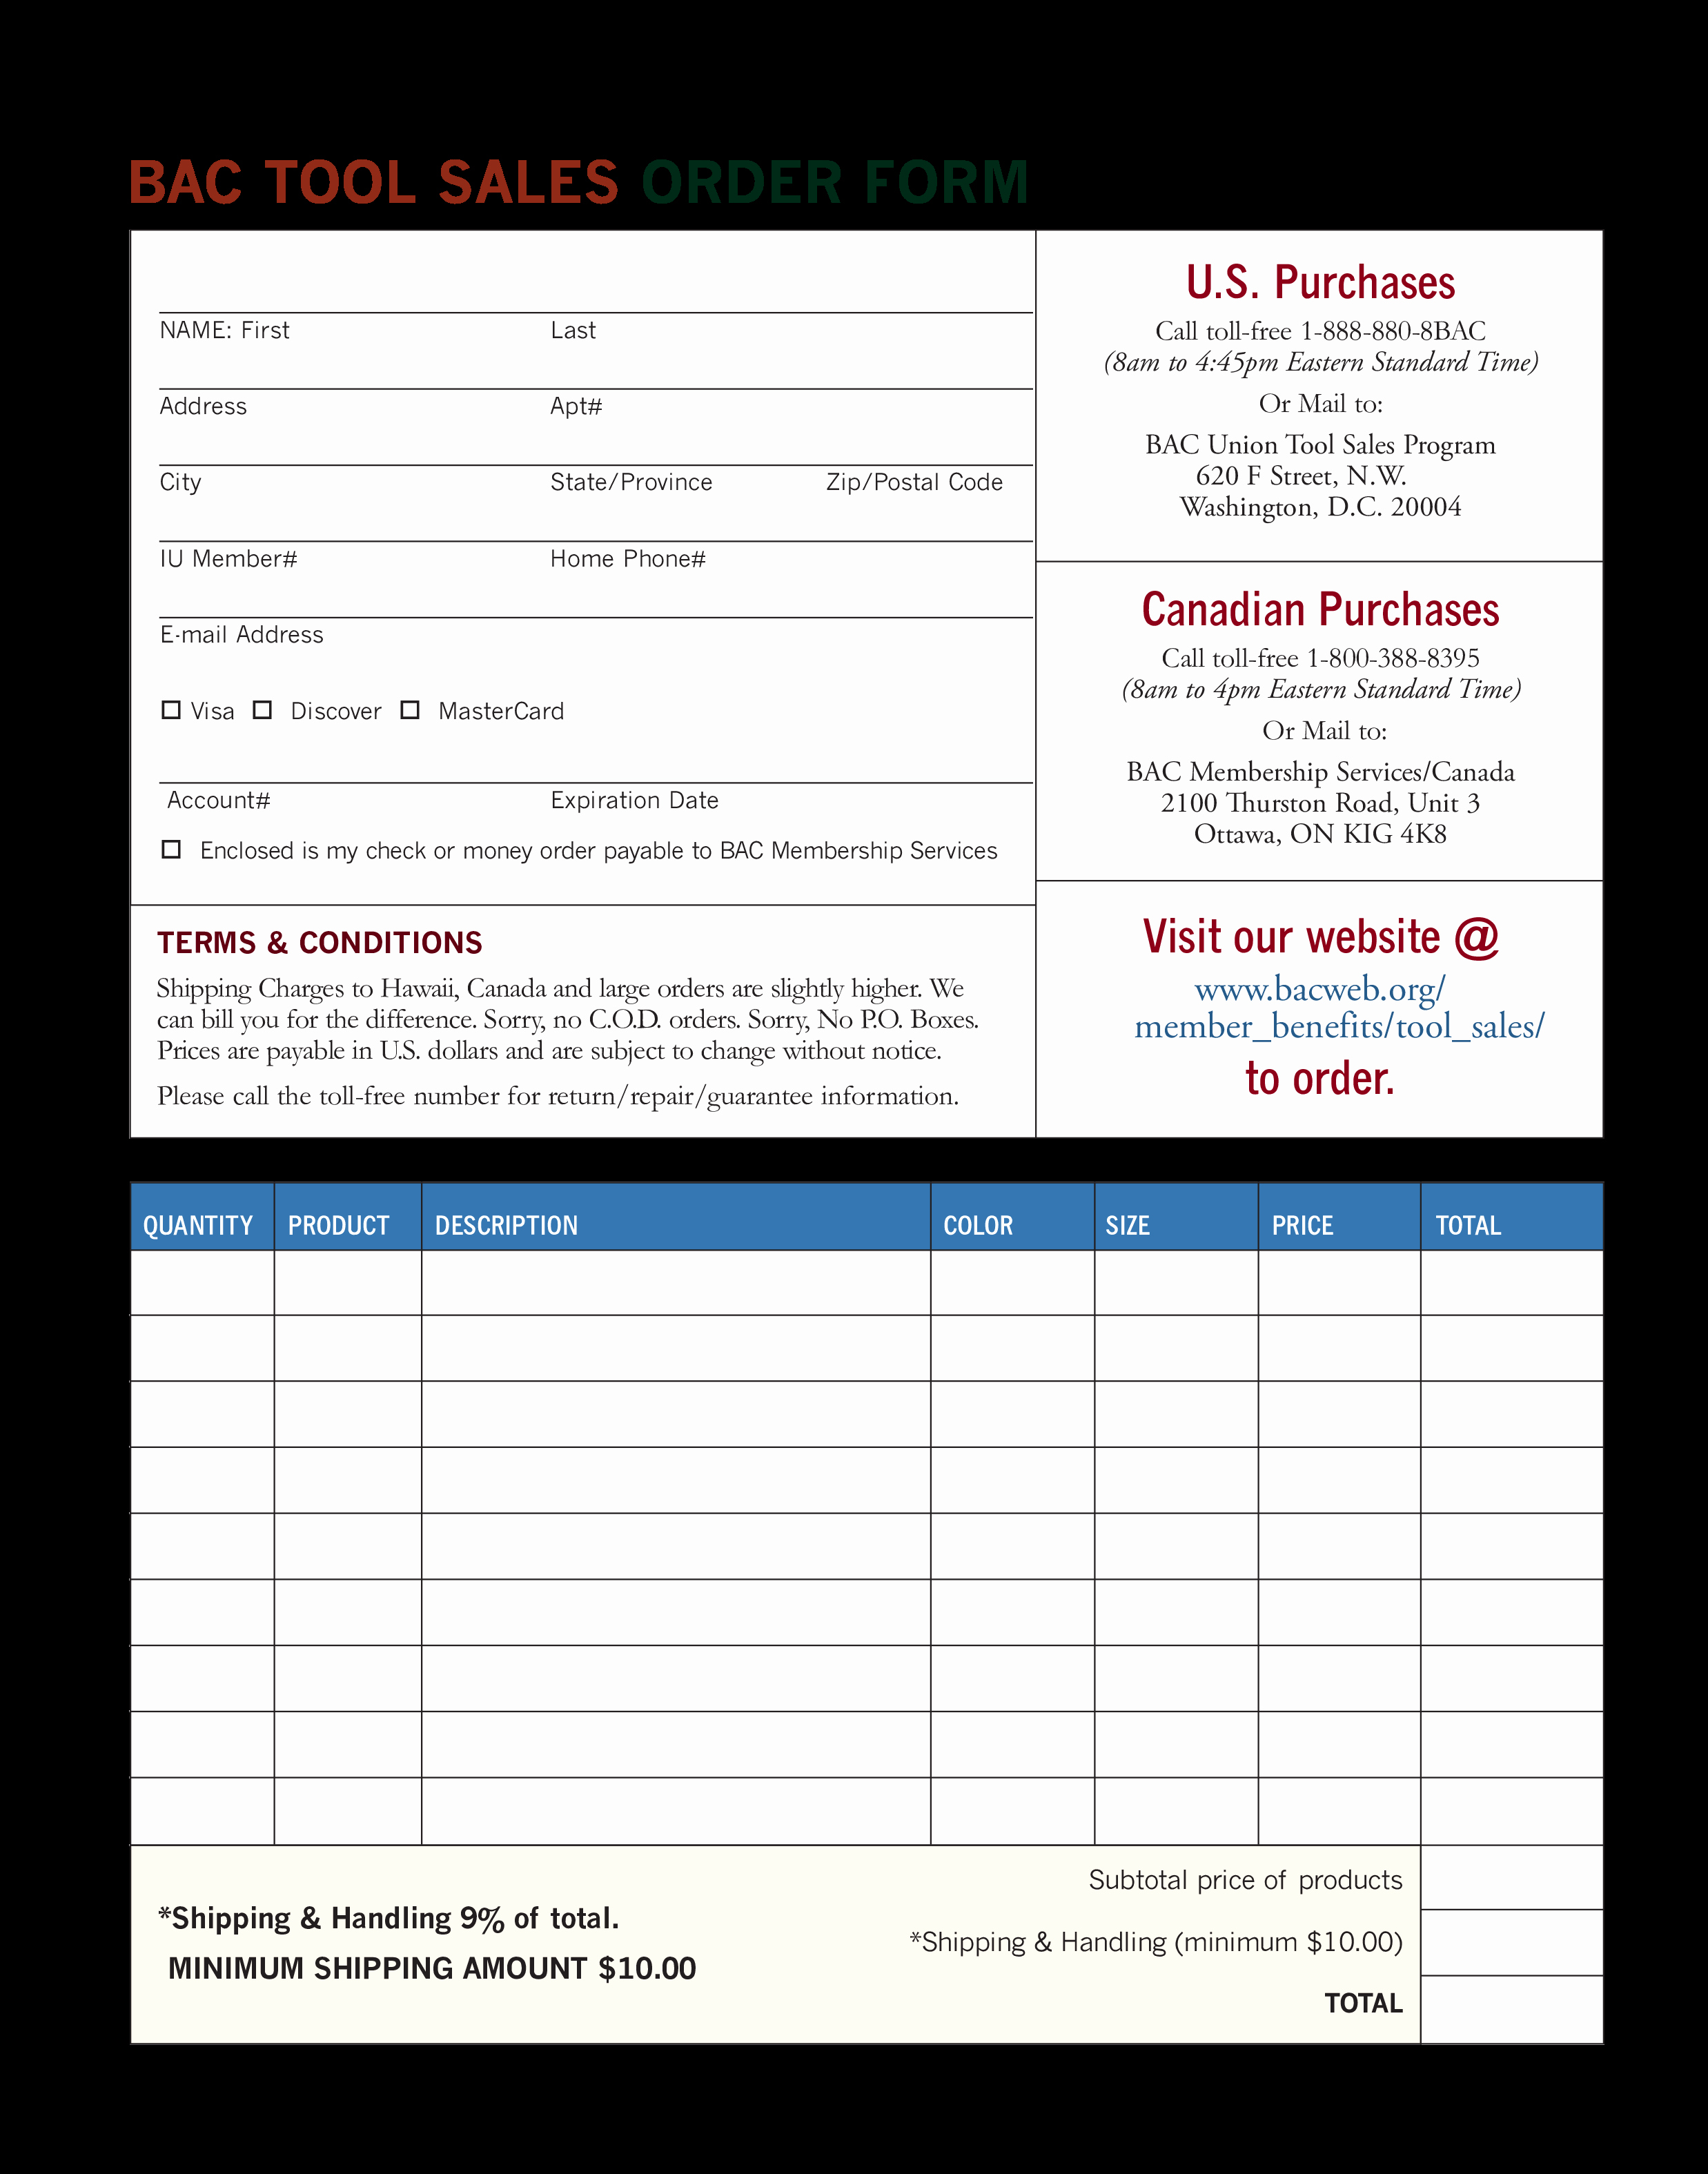 Sales order form Template Best Of Sales order form